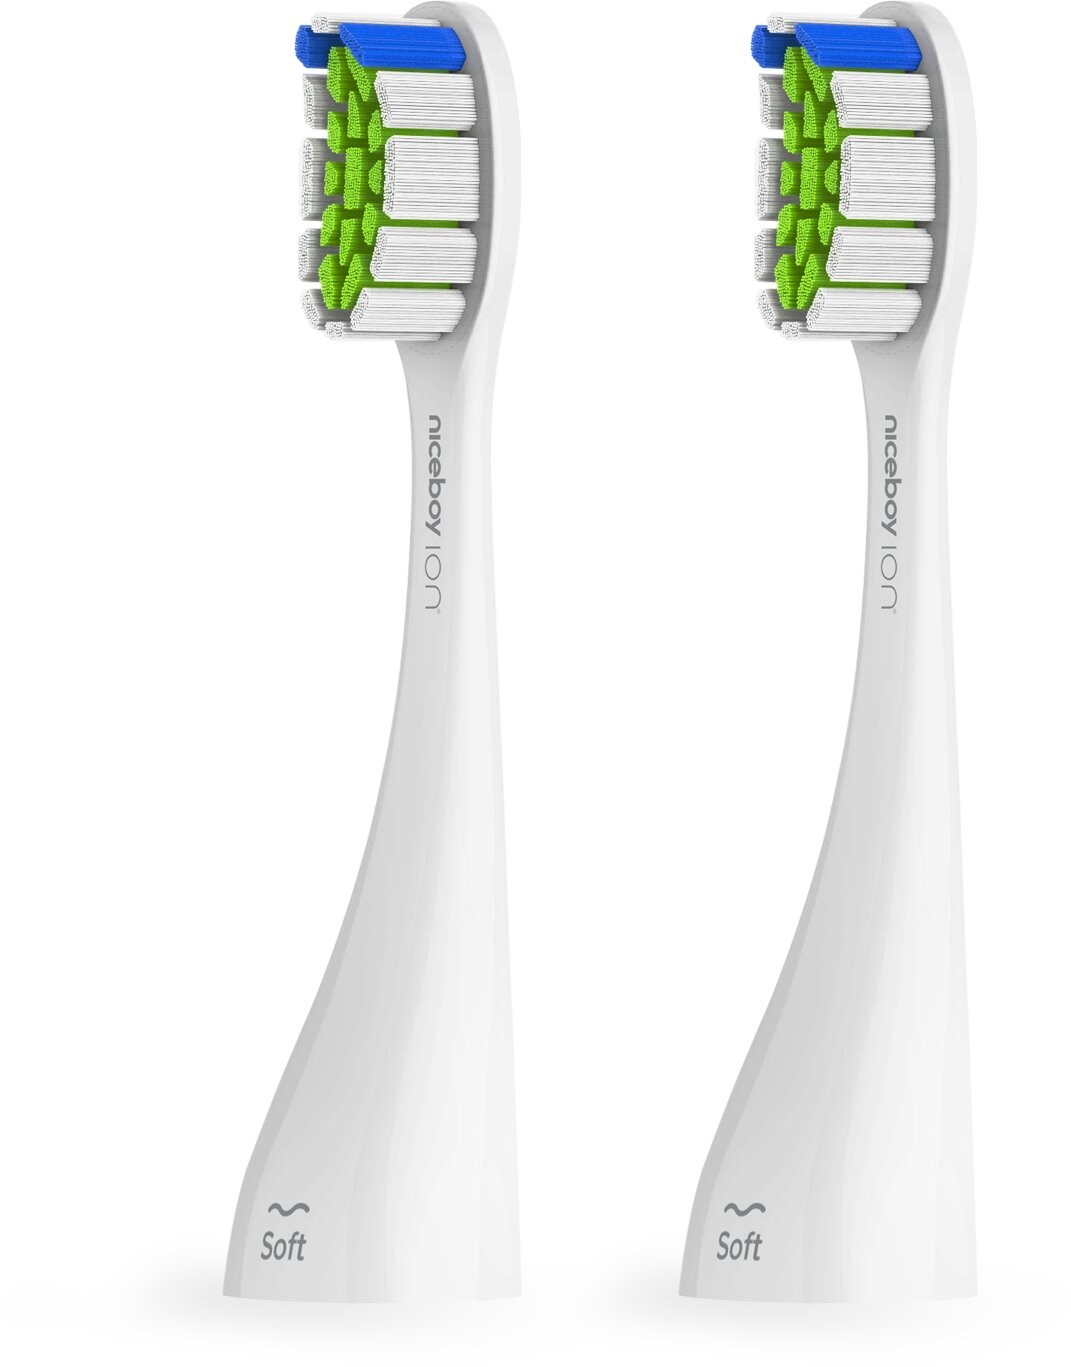 Niceboy ION Sonic Pro UV toothbrush heads 2 pcs Soft white - sonic-pro-uv-soft-white